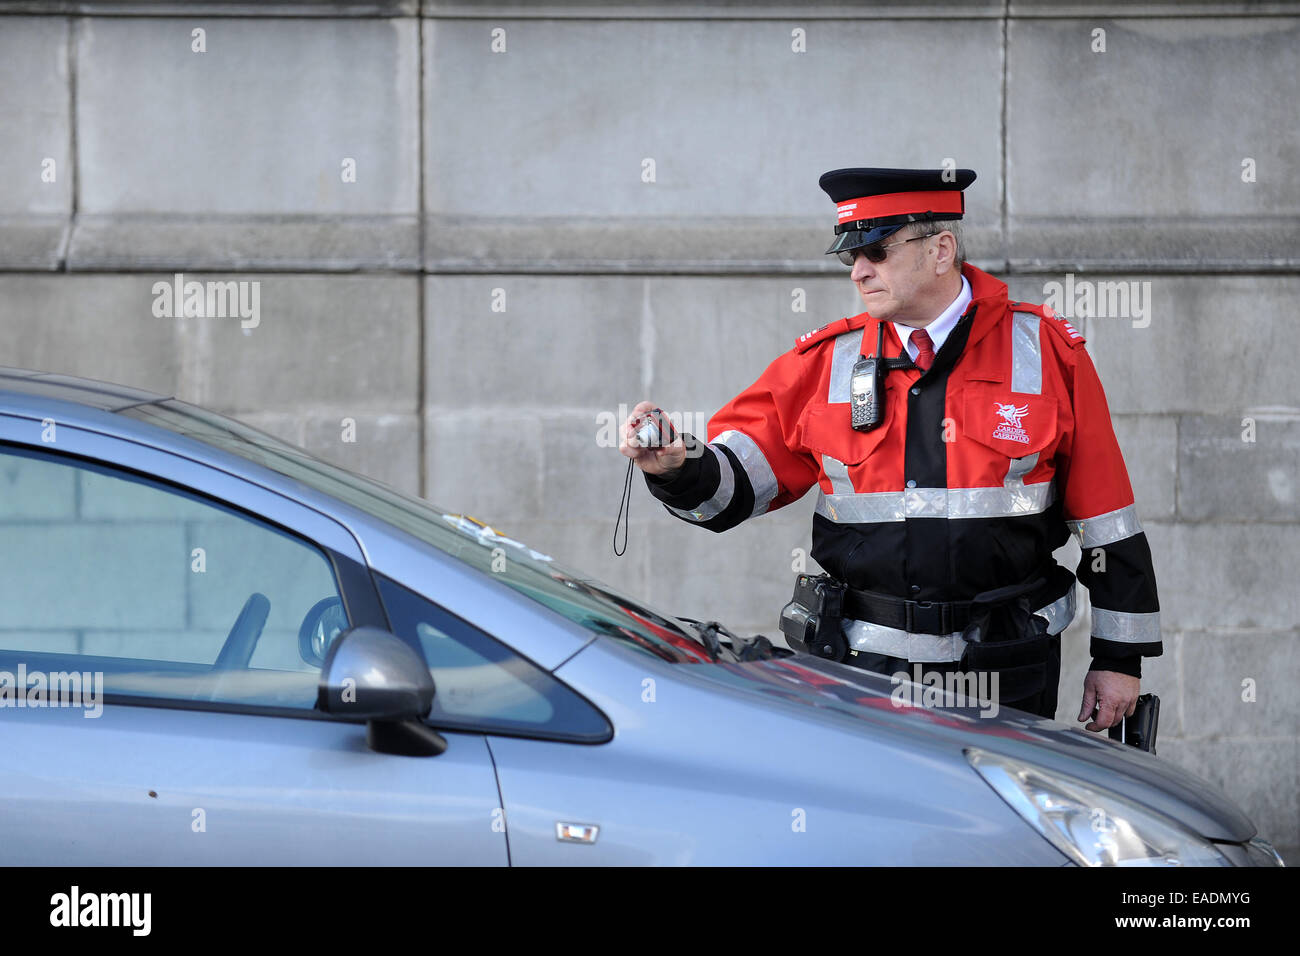 Un gardien de la circulation de photos une voiture après l'émission d'un ticket de parking pour stationnement illégal. Banque D'Images